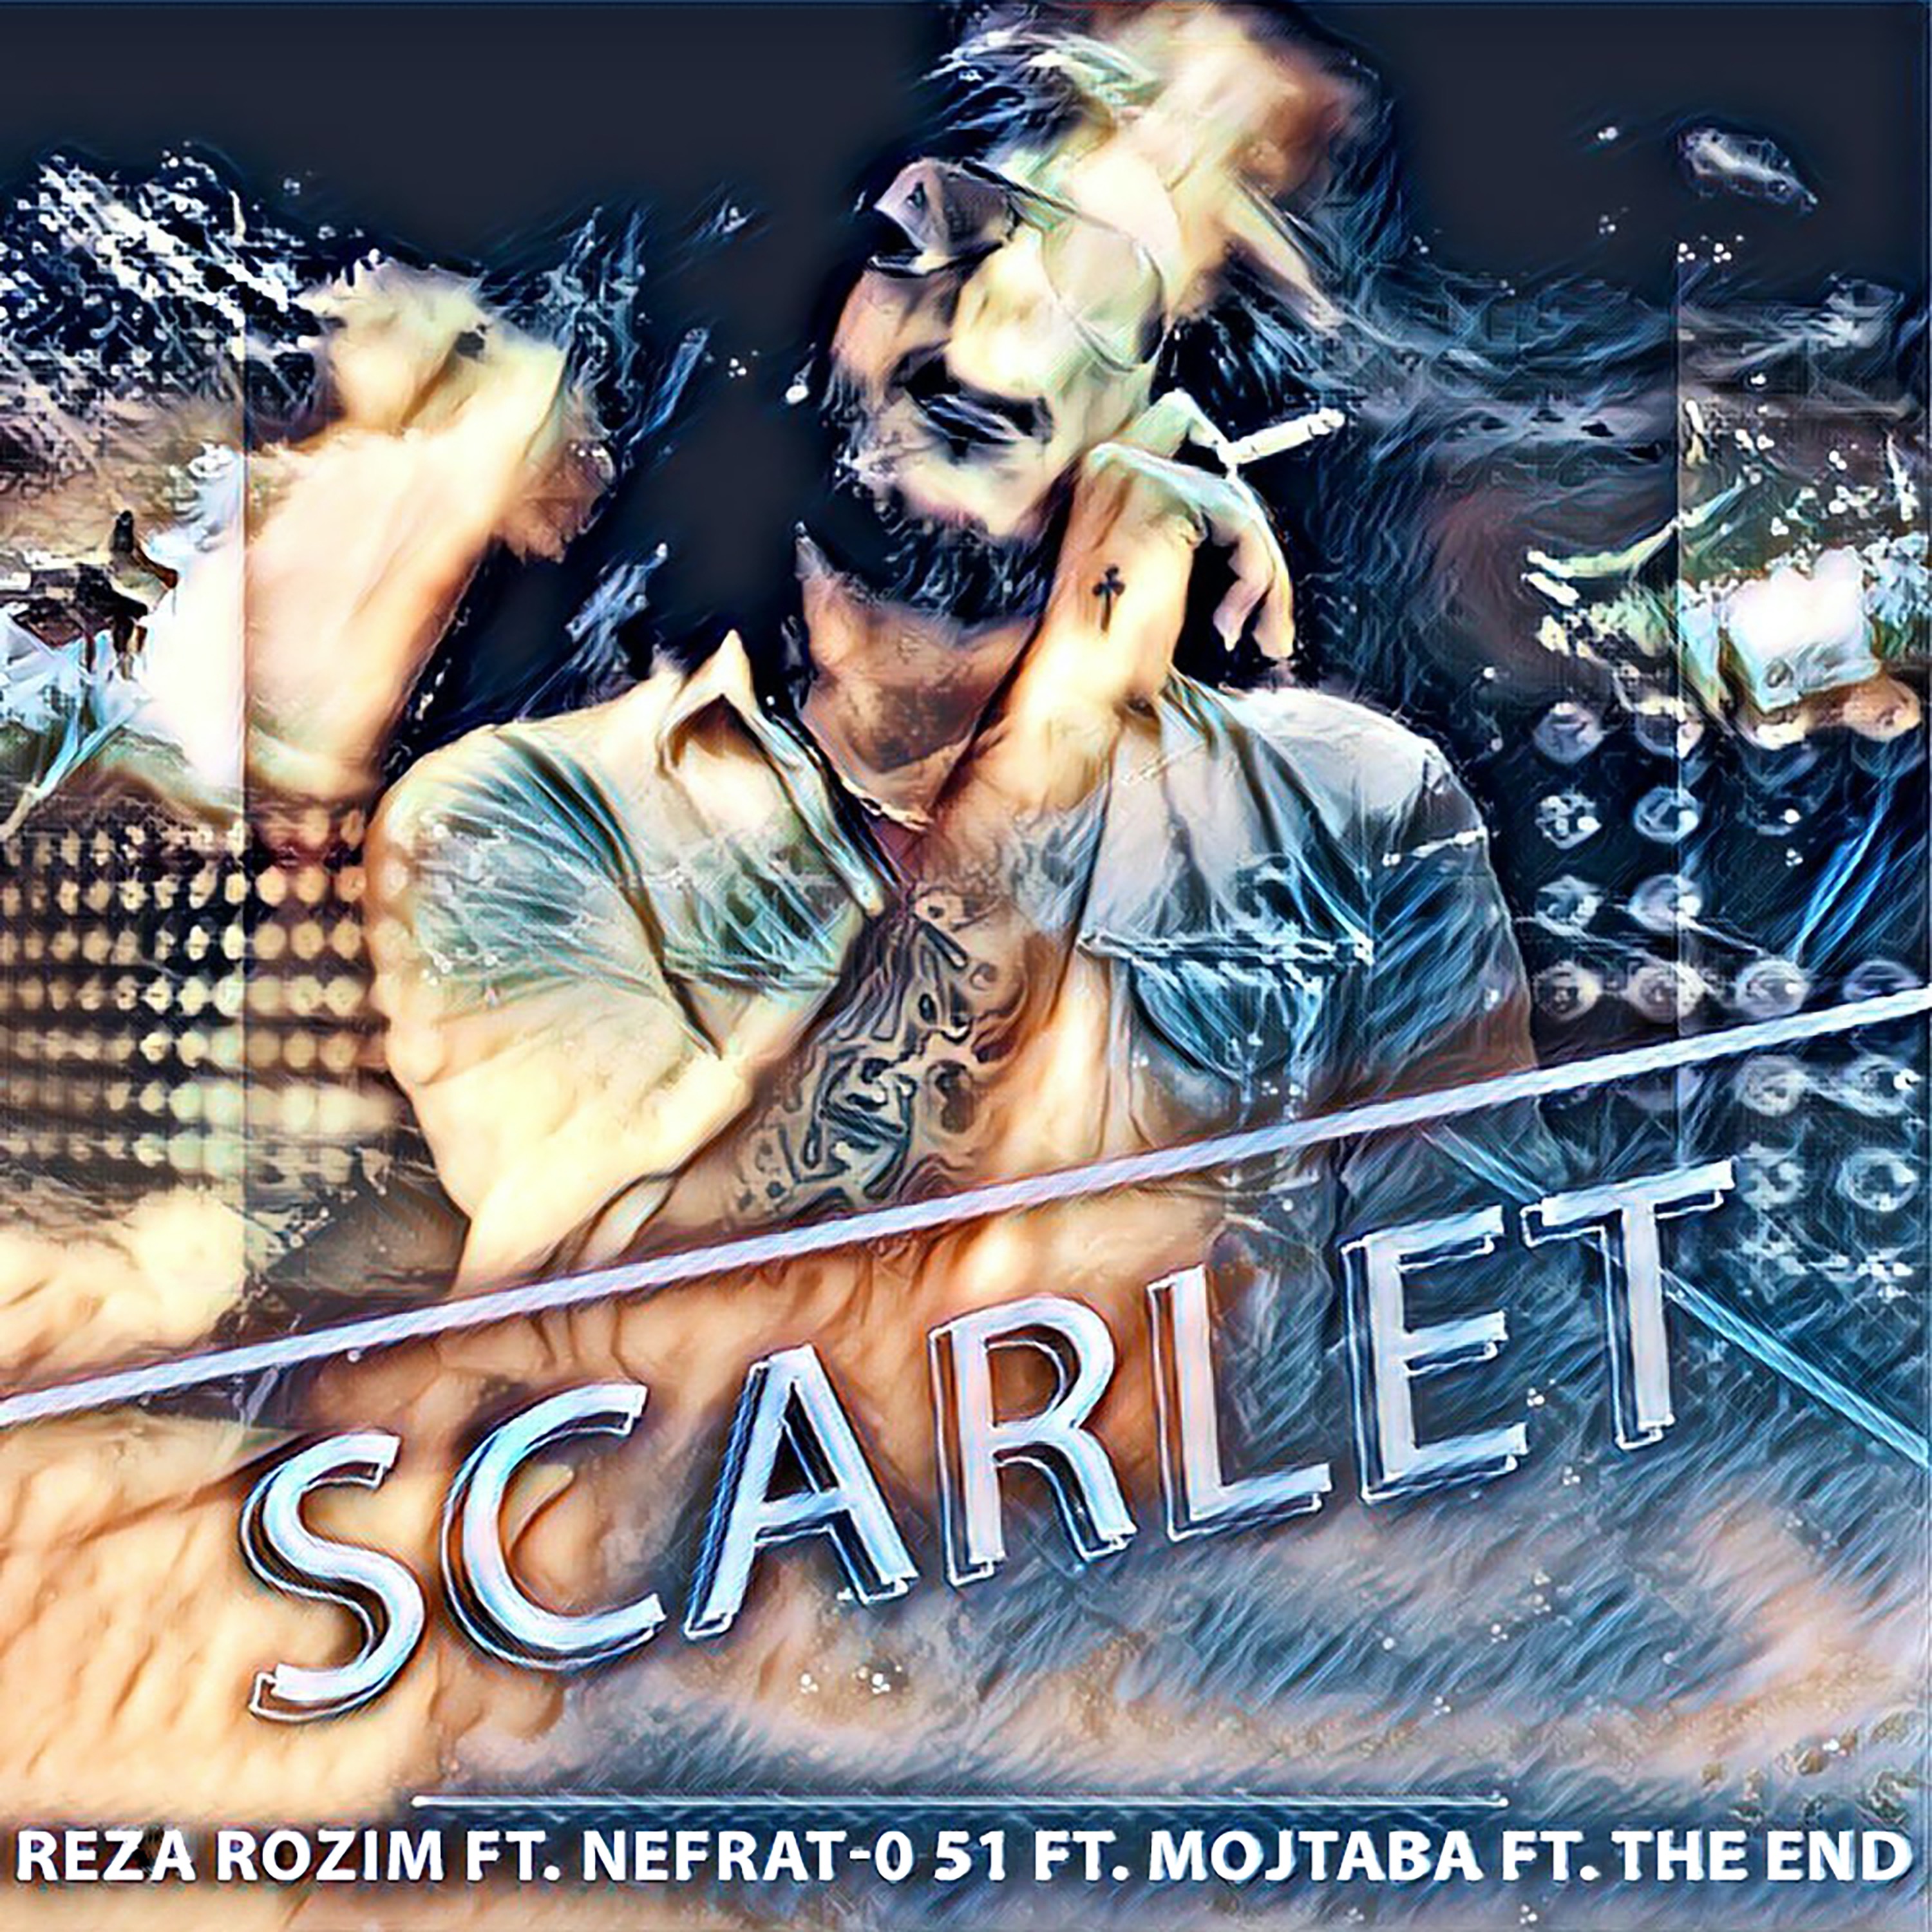  دانلود آهنگ جدید رُظیم - مخمل | Download New Music By Reza Rozim - Scarlet (feat. Mojtaba, Nefrat 051 & The End)